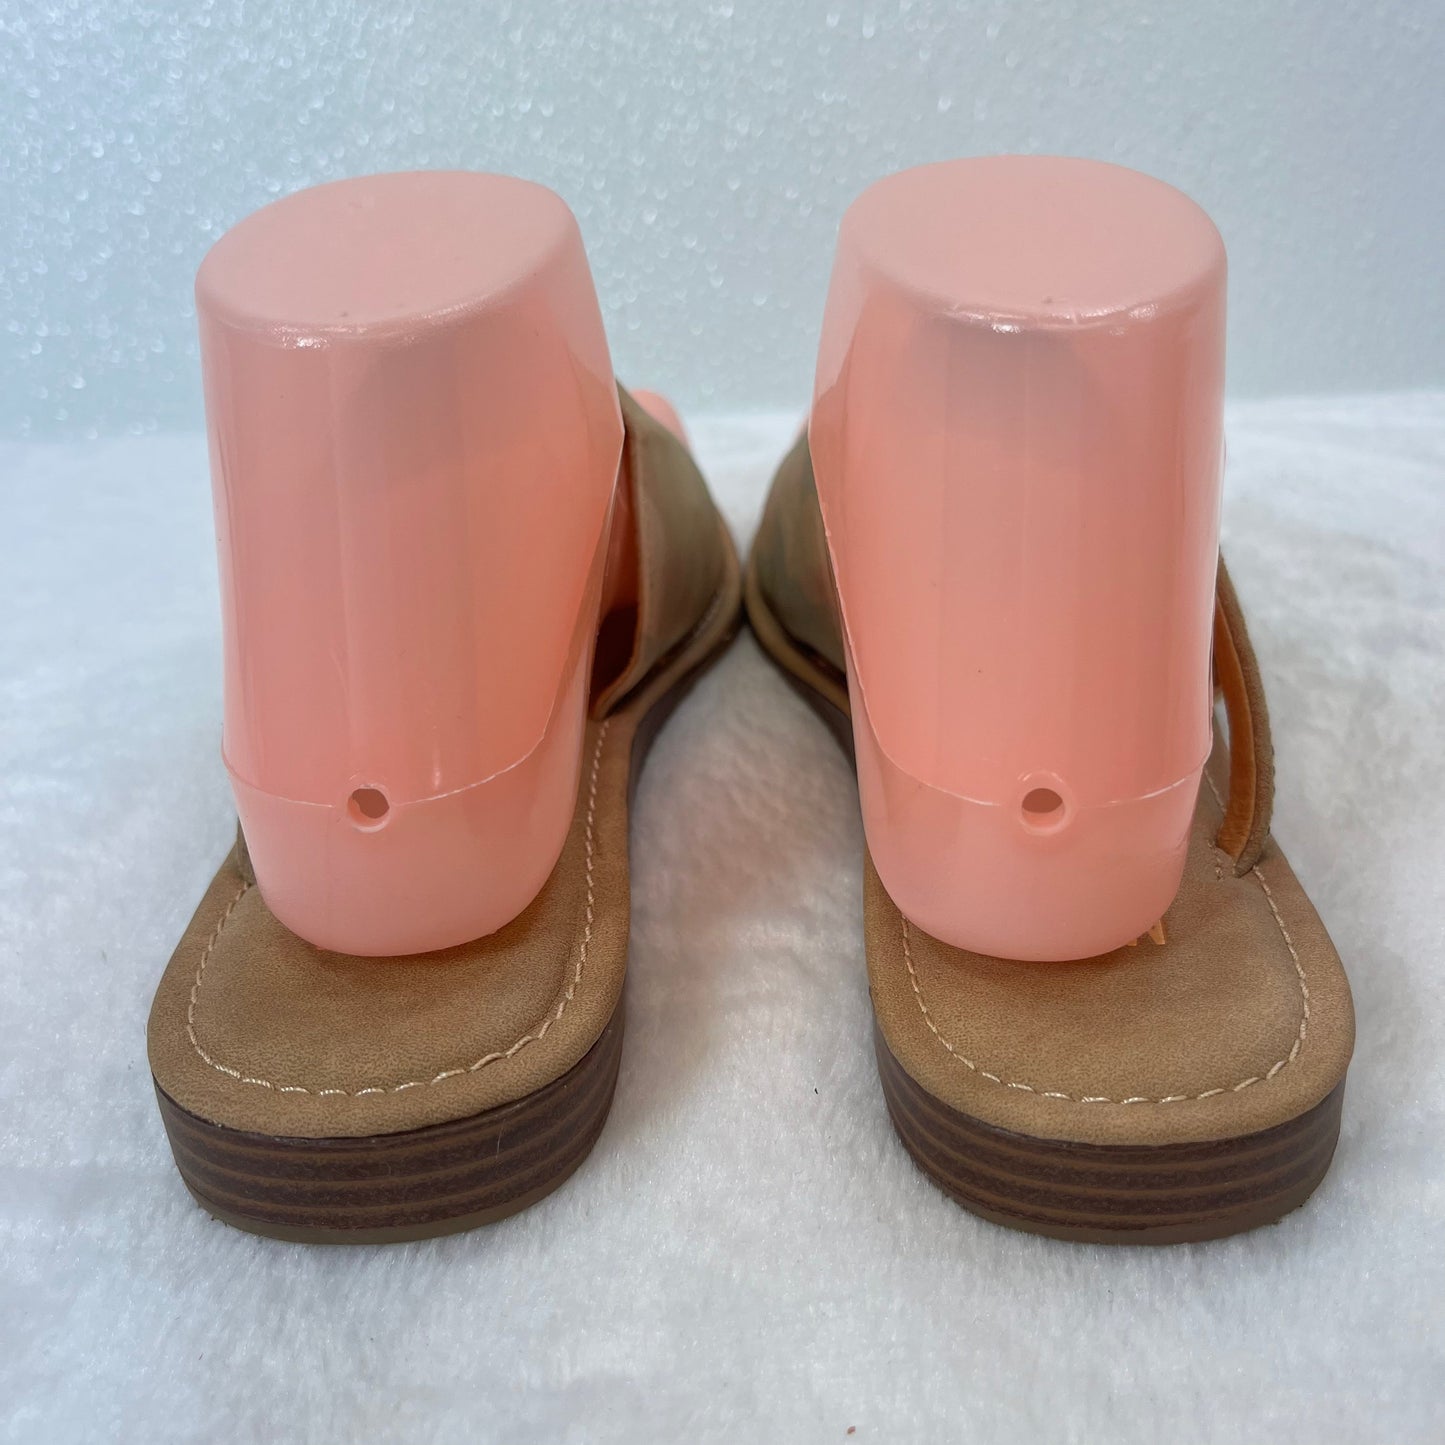 Sandals Flip Flops By Mix No 6  Size: 8